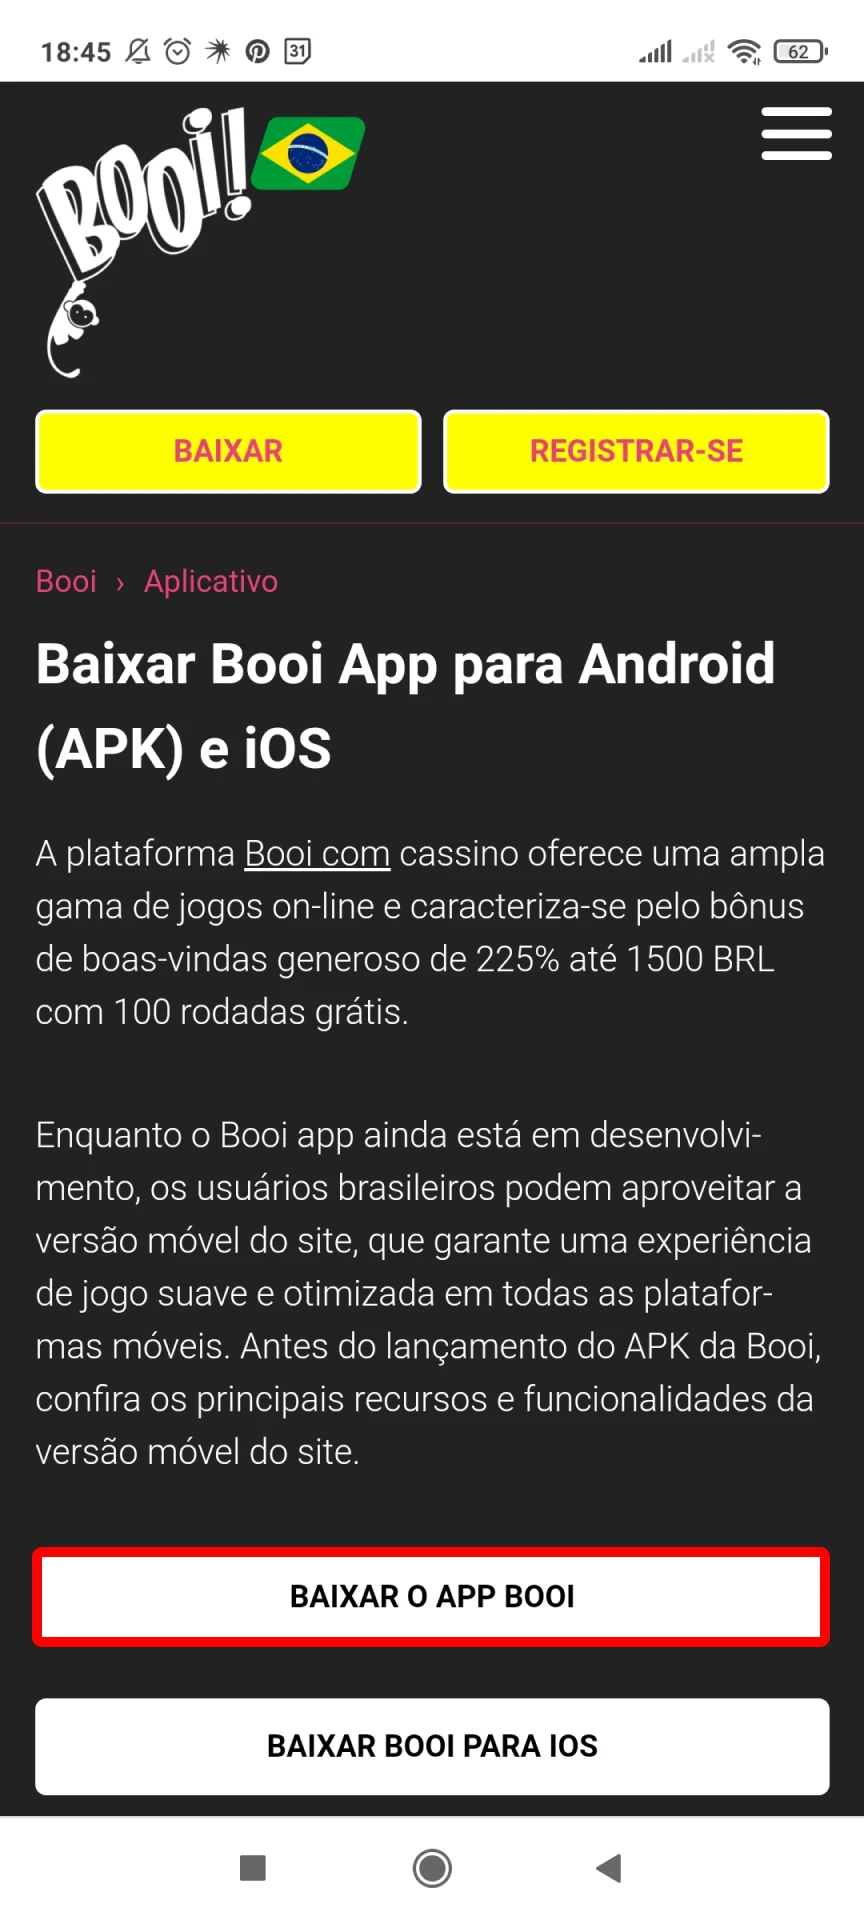 Visite a página oficial do site Booi https://booi1.com.br/aplicativo/ para Android.